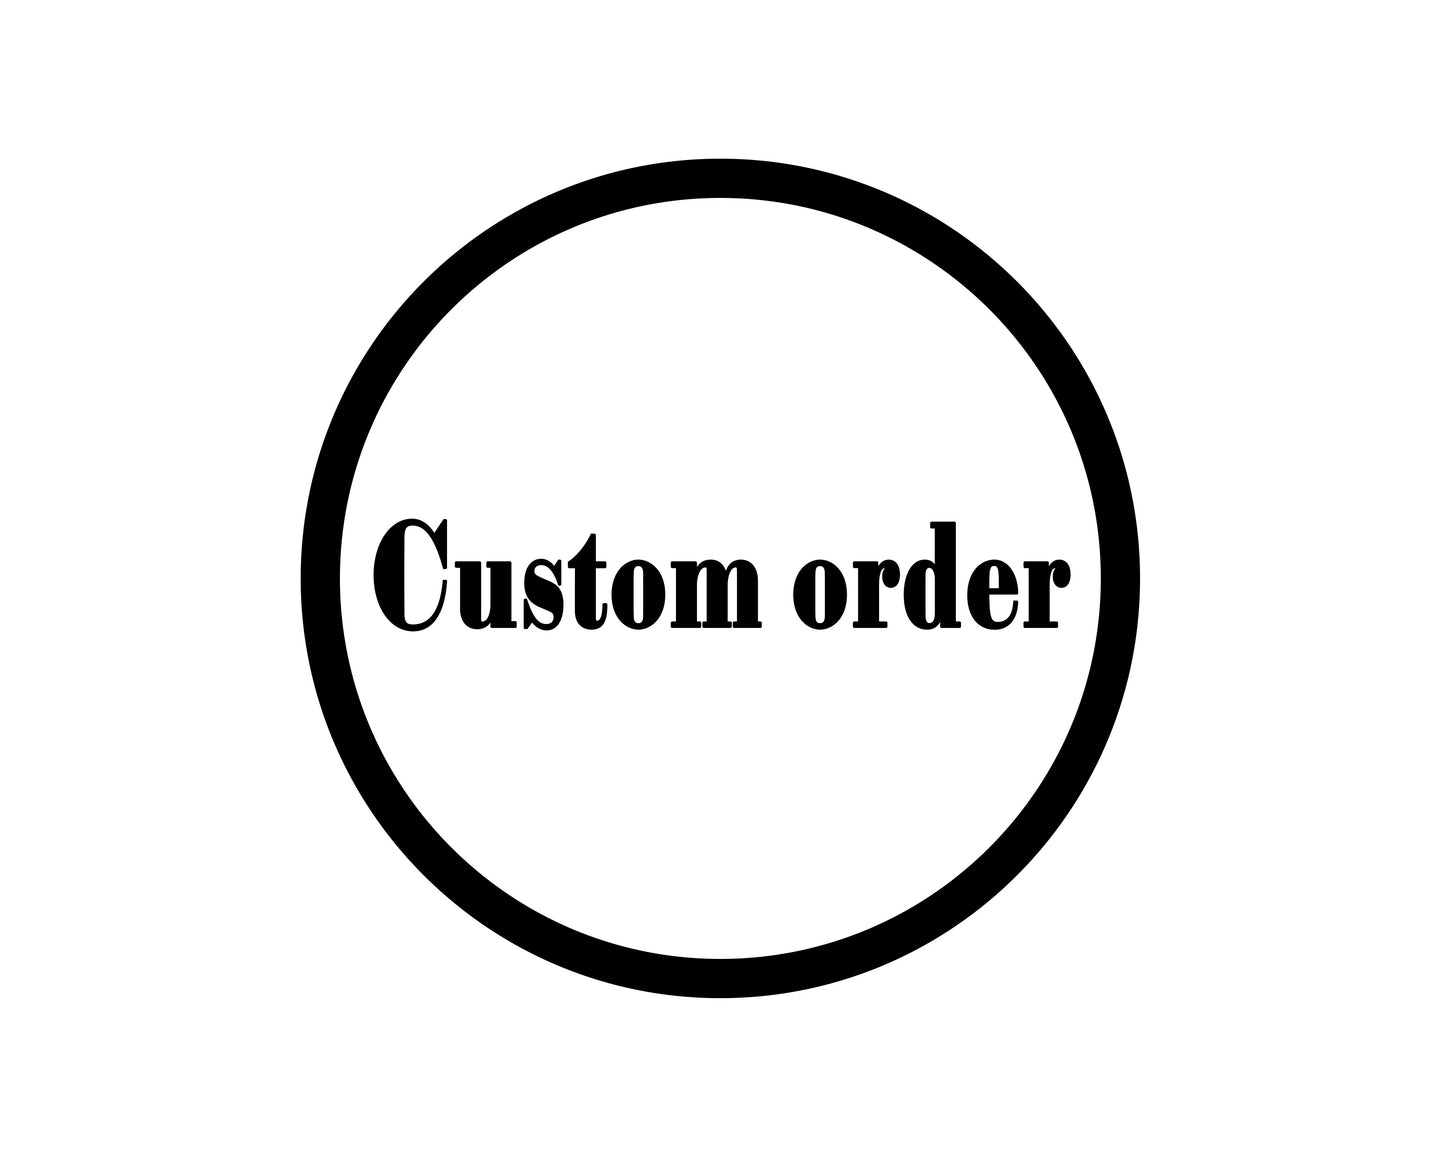 Deposit for custom order $50